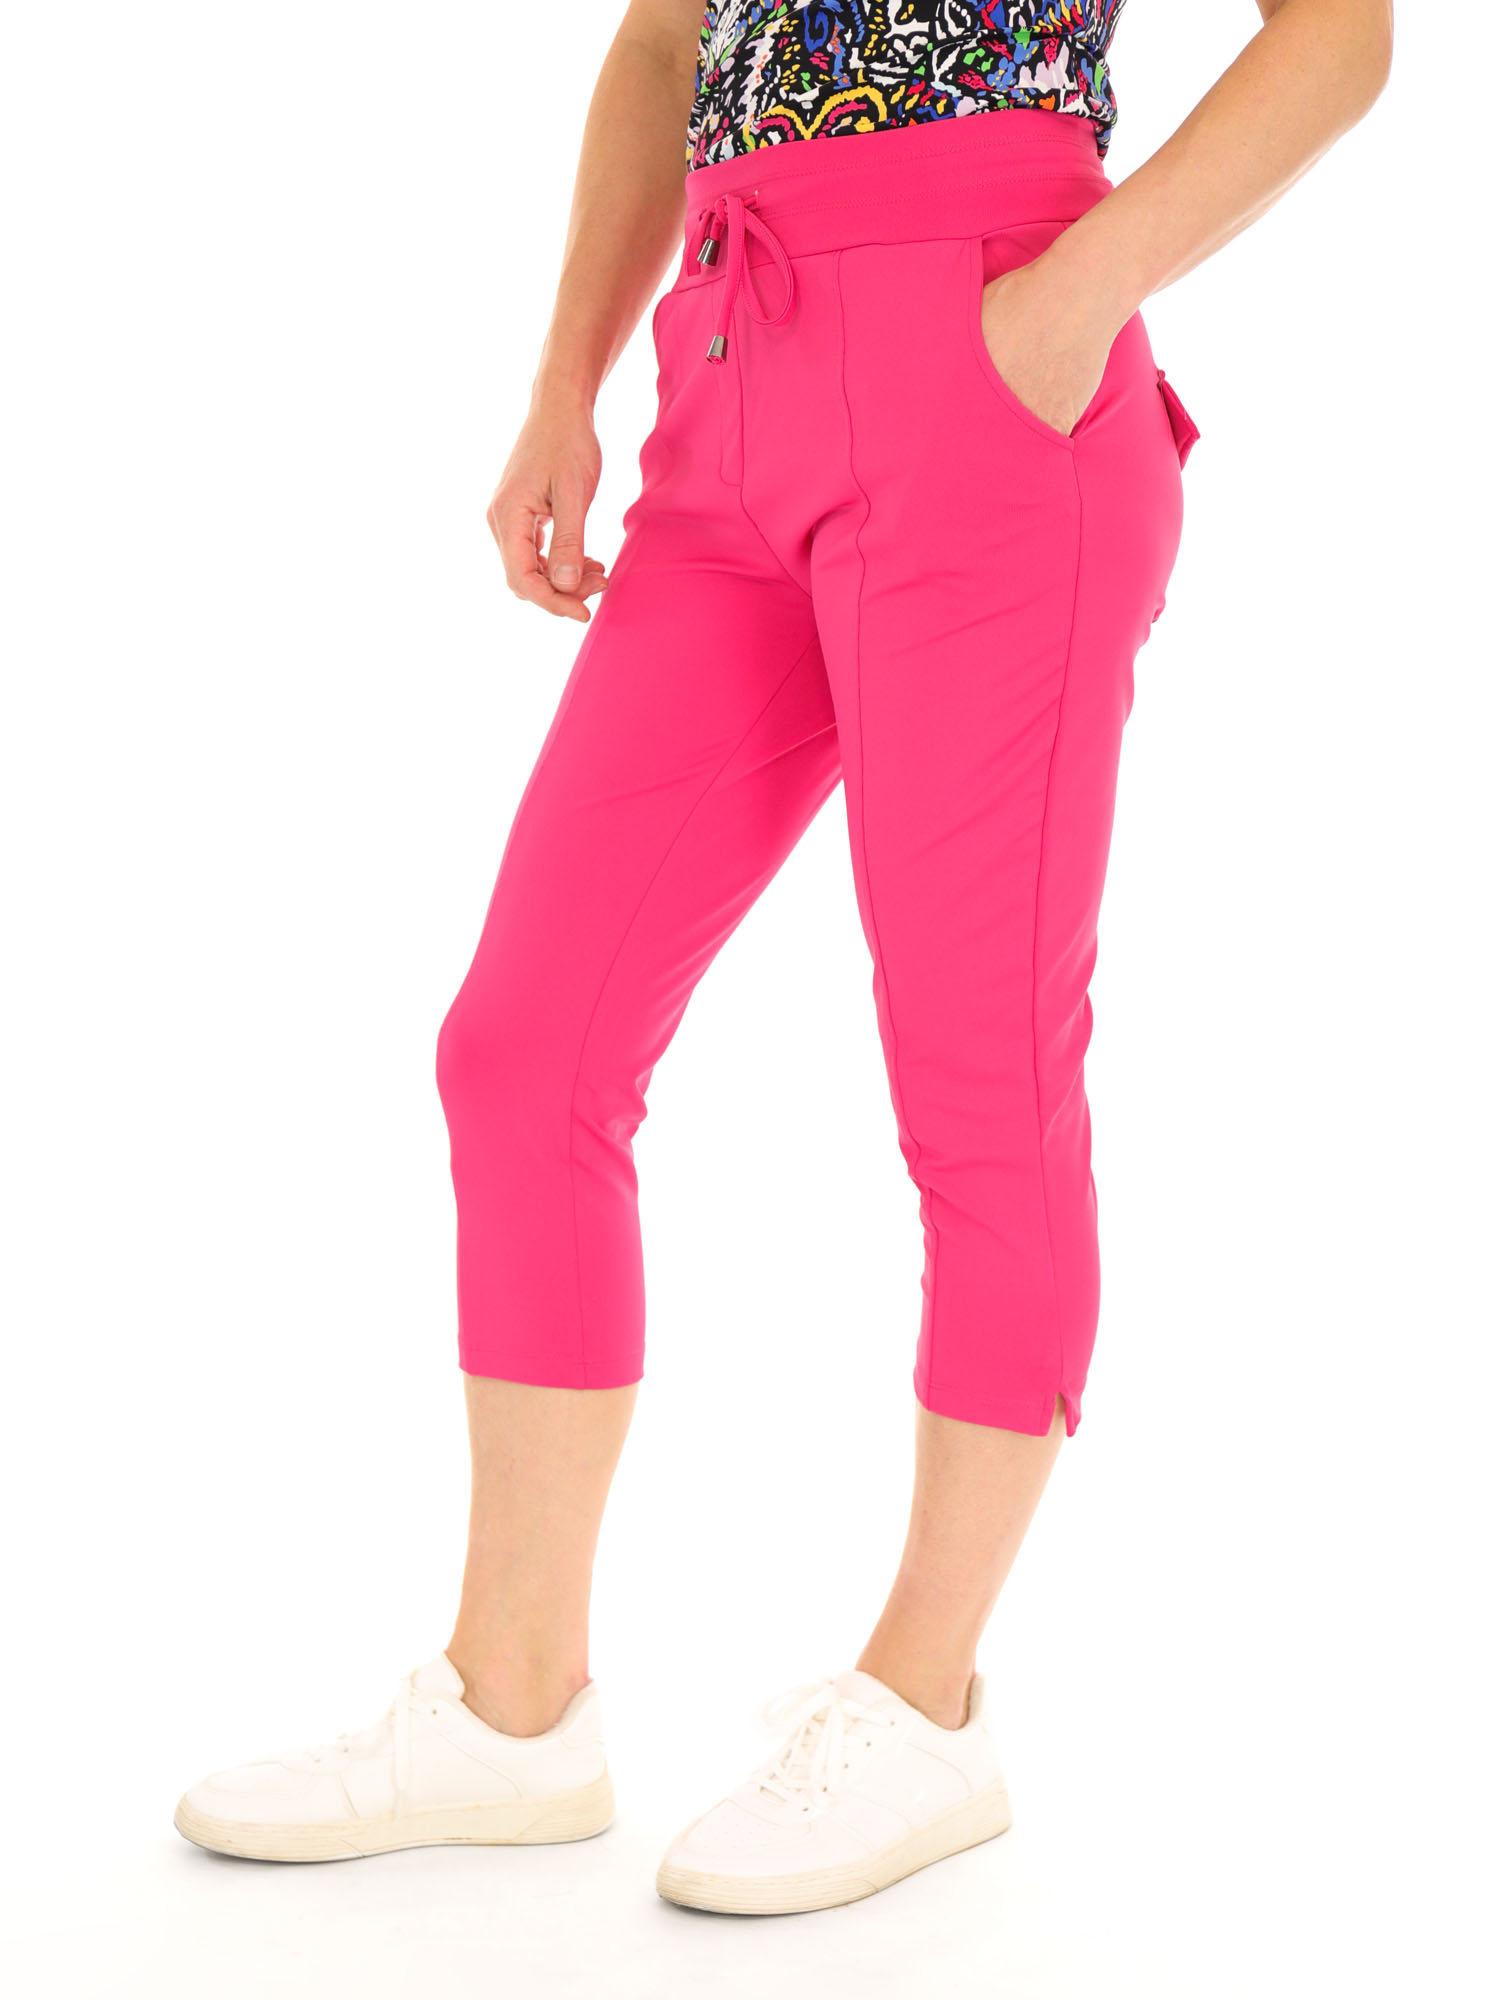 basic-travel-capri-broek-van-thombiq-in-een-egale-fuchsia-roze-kleur